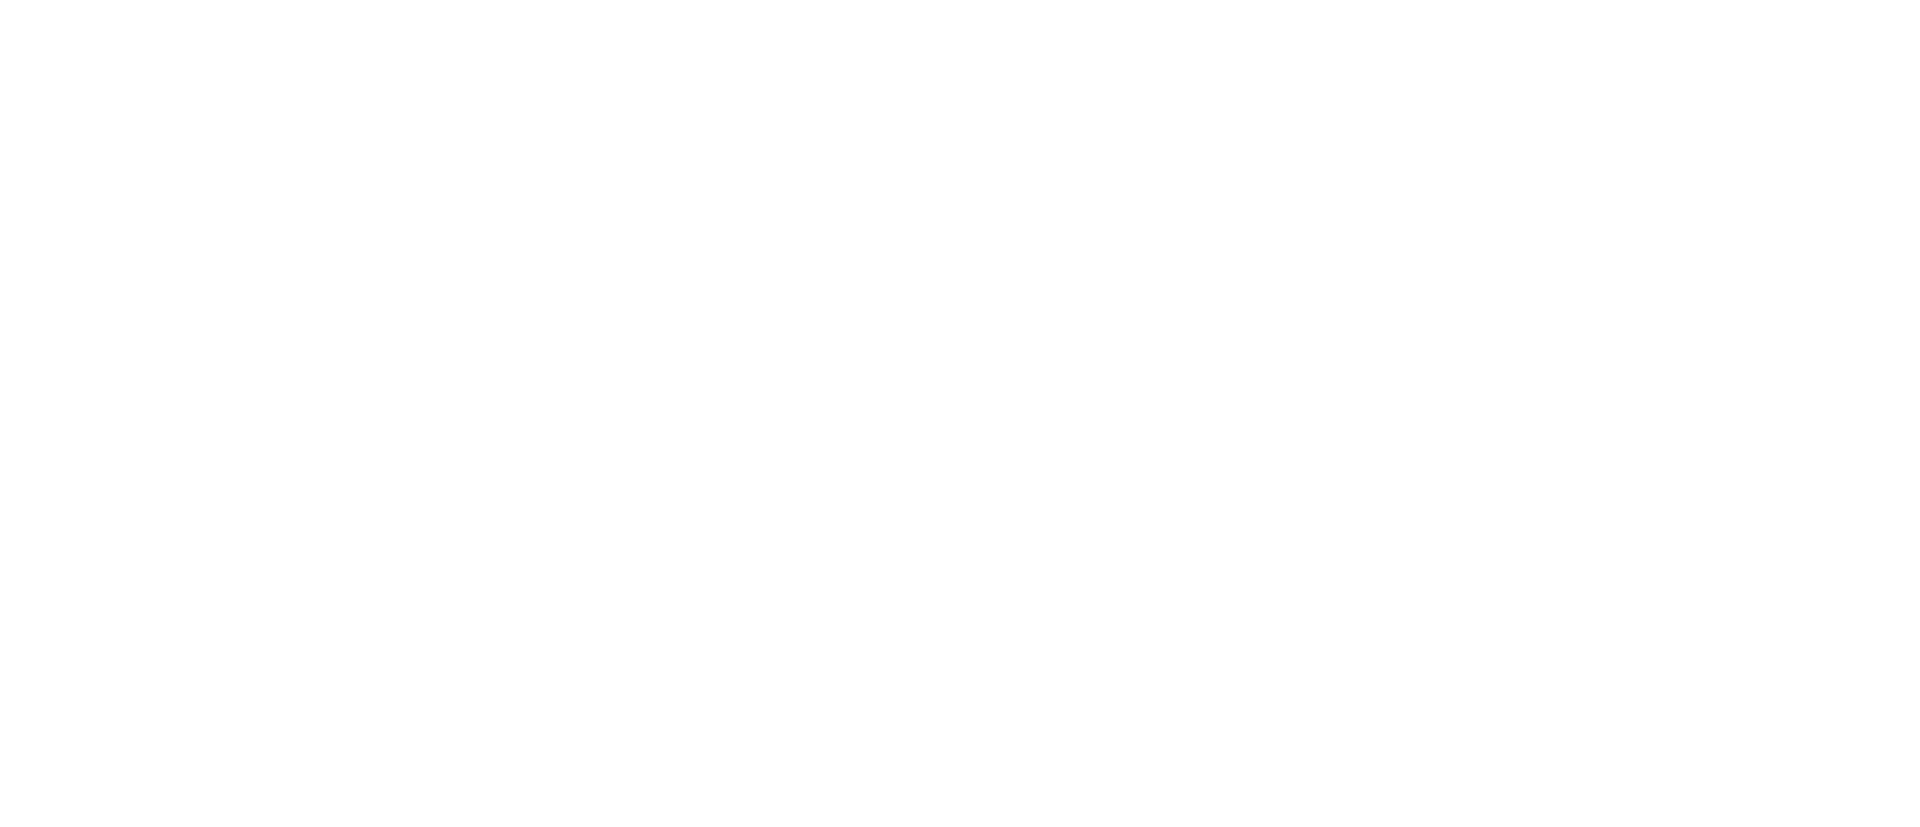 Eine Straßenkarte